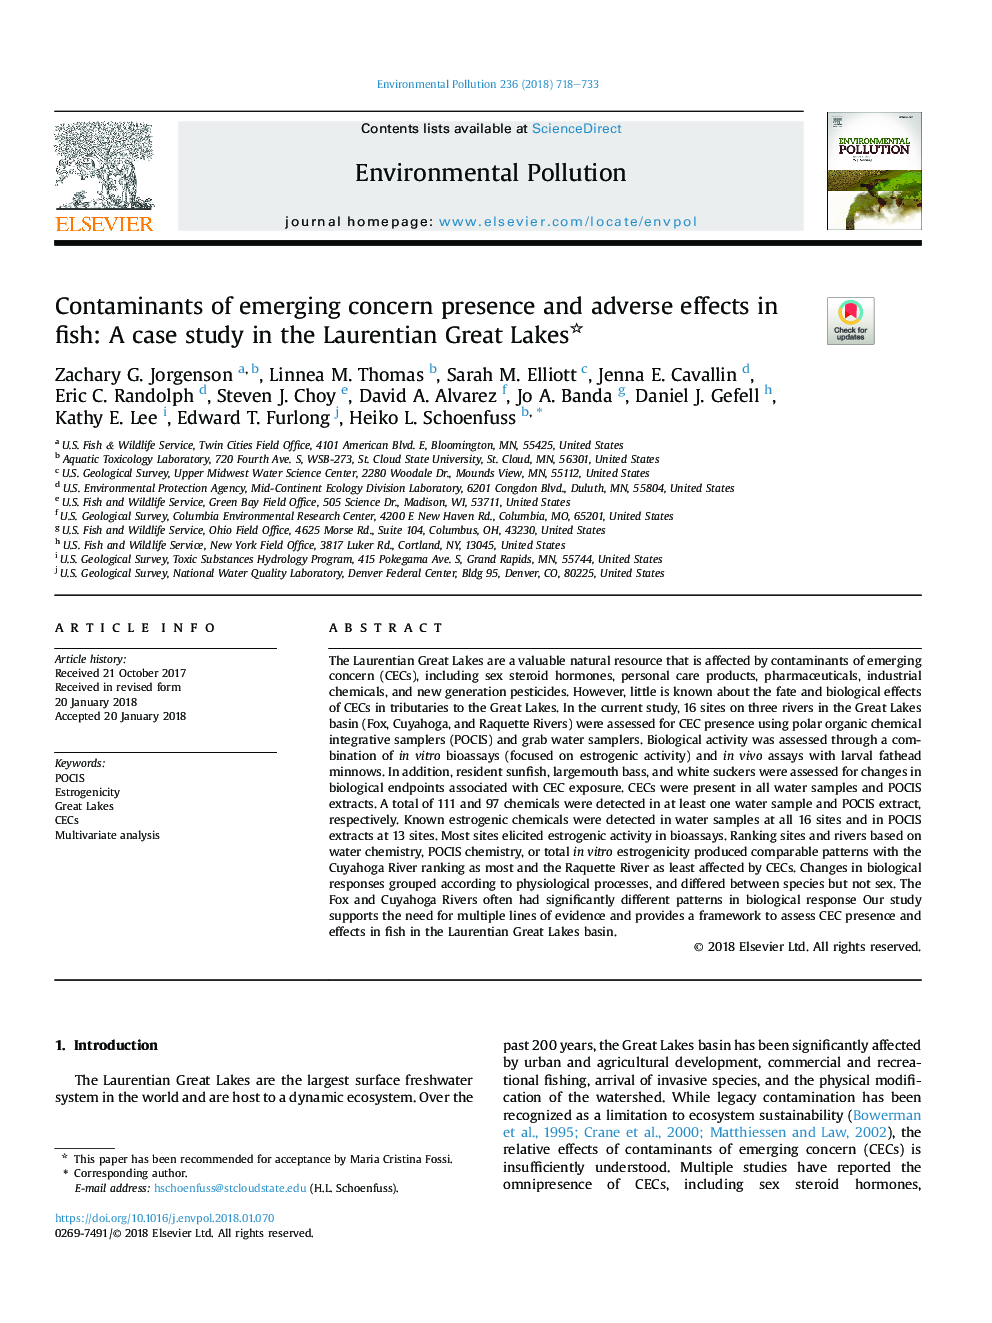 آلاینده های موجود در معرض نگرانی و اثرات جانبی آن در ماهی: یک مطالعه موردی در دریاچه های بزرگ لورانتی 